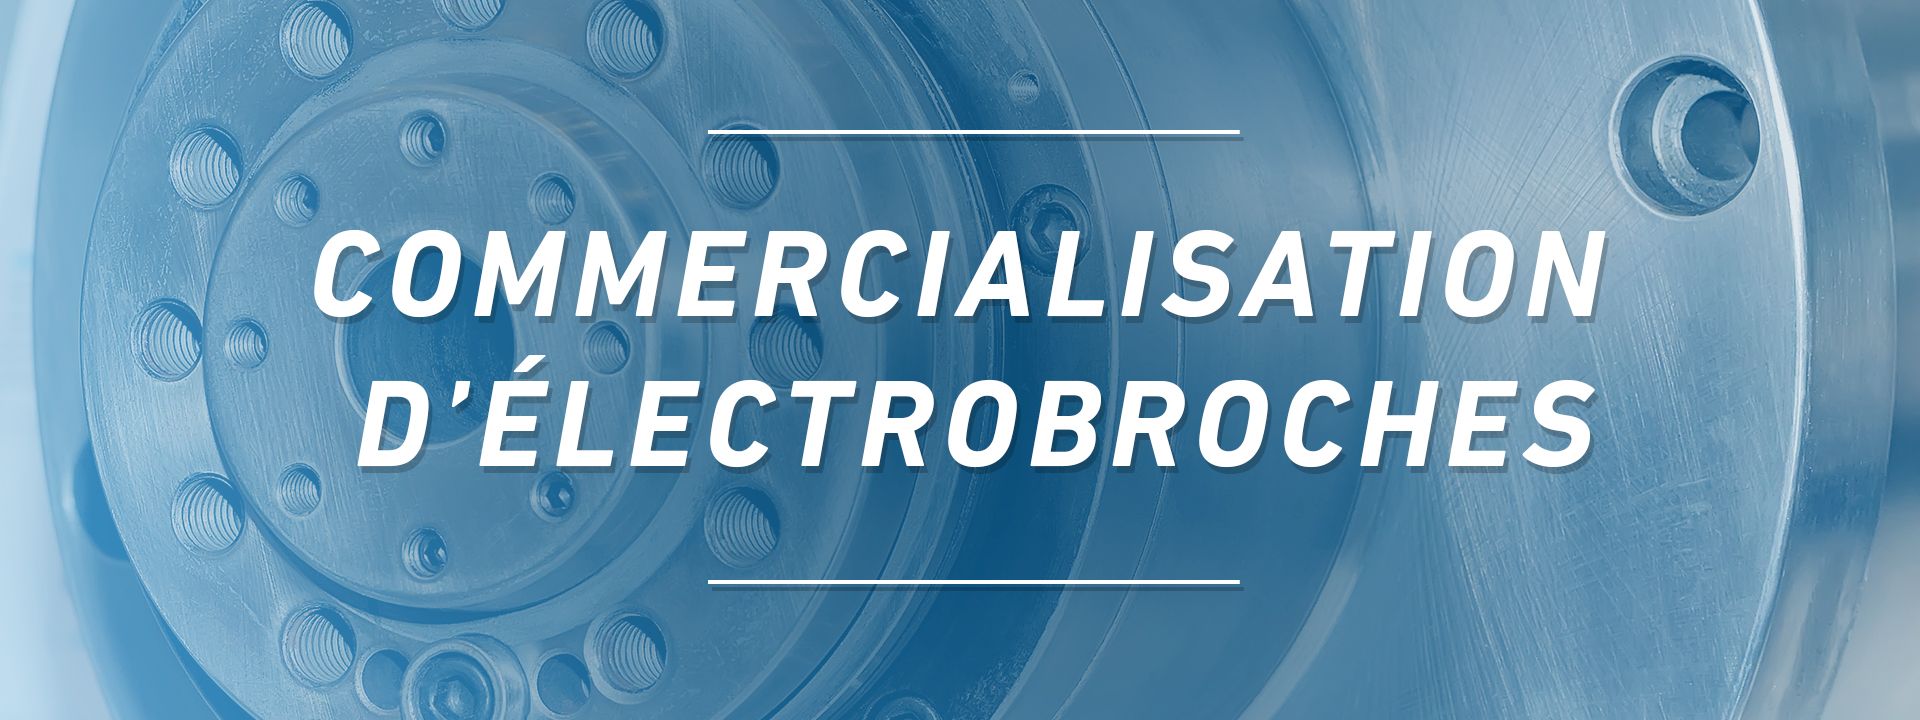 Precise France - Commercialisation d'électrobroches